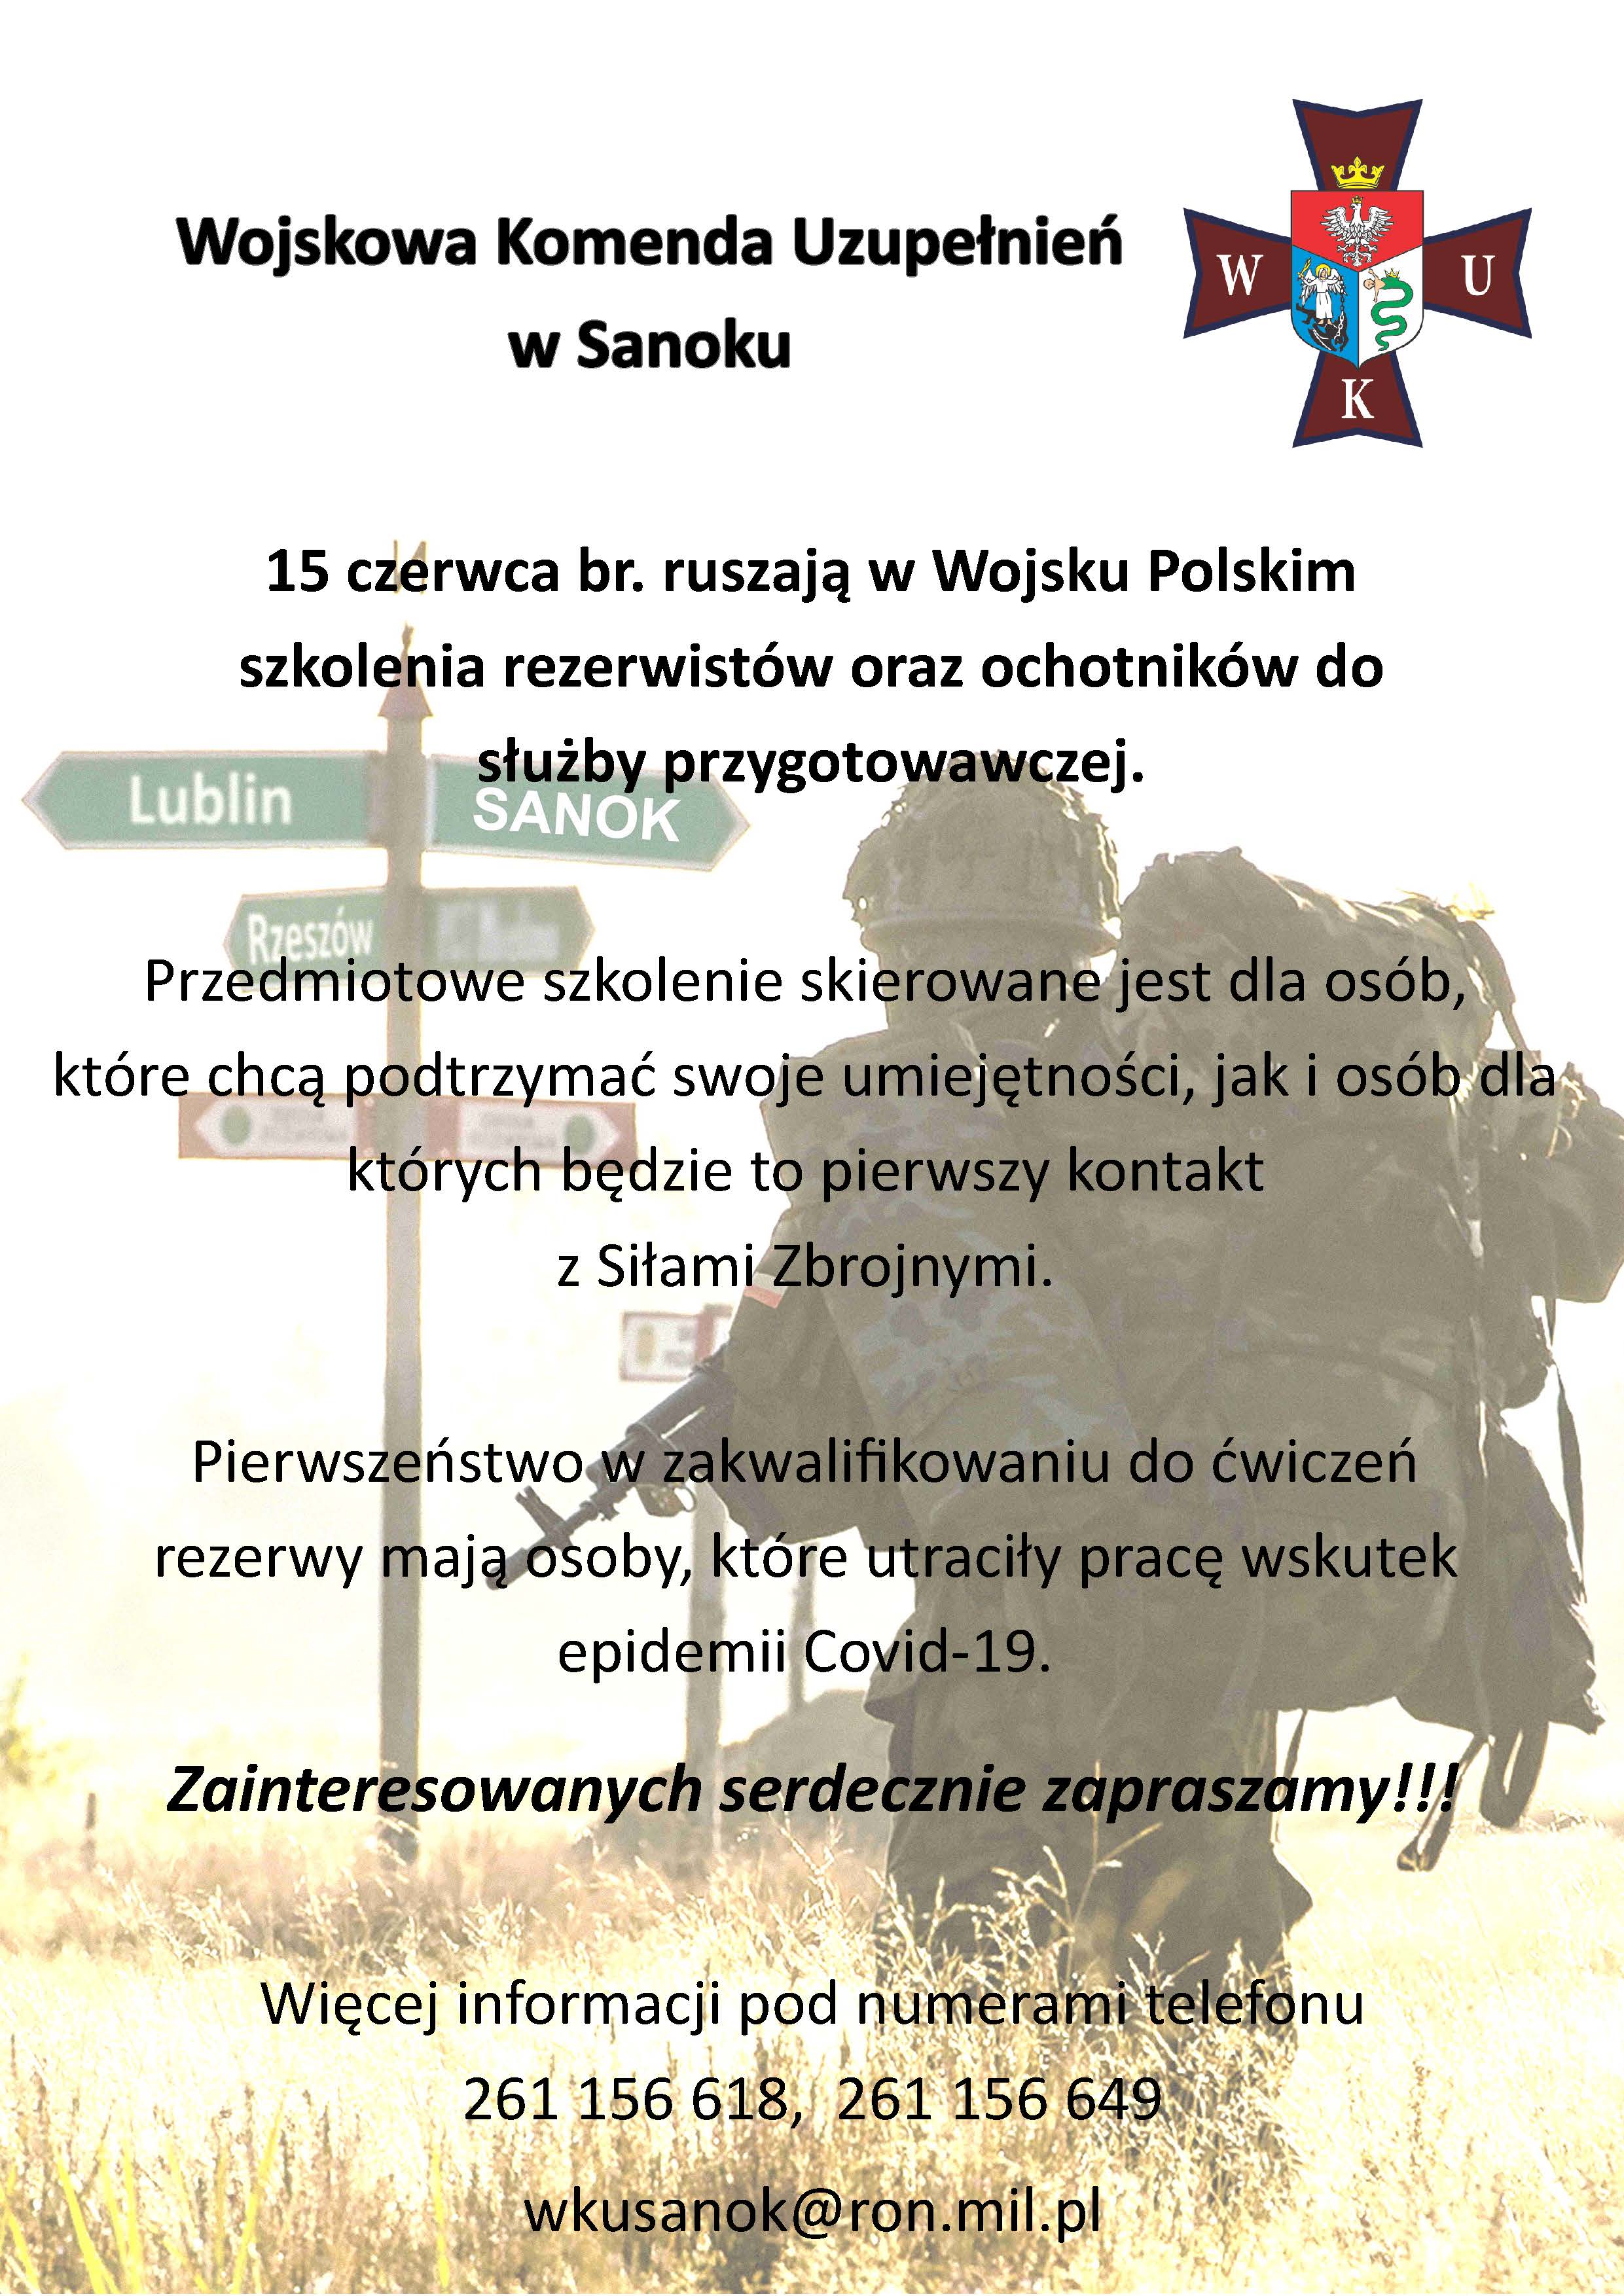 Wojskowa Komenda Uzupełnień w Sanoku - szkolenia 15.06.2020